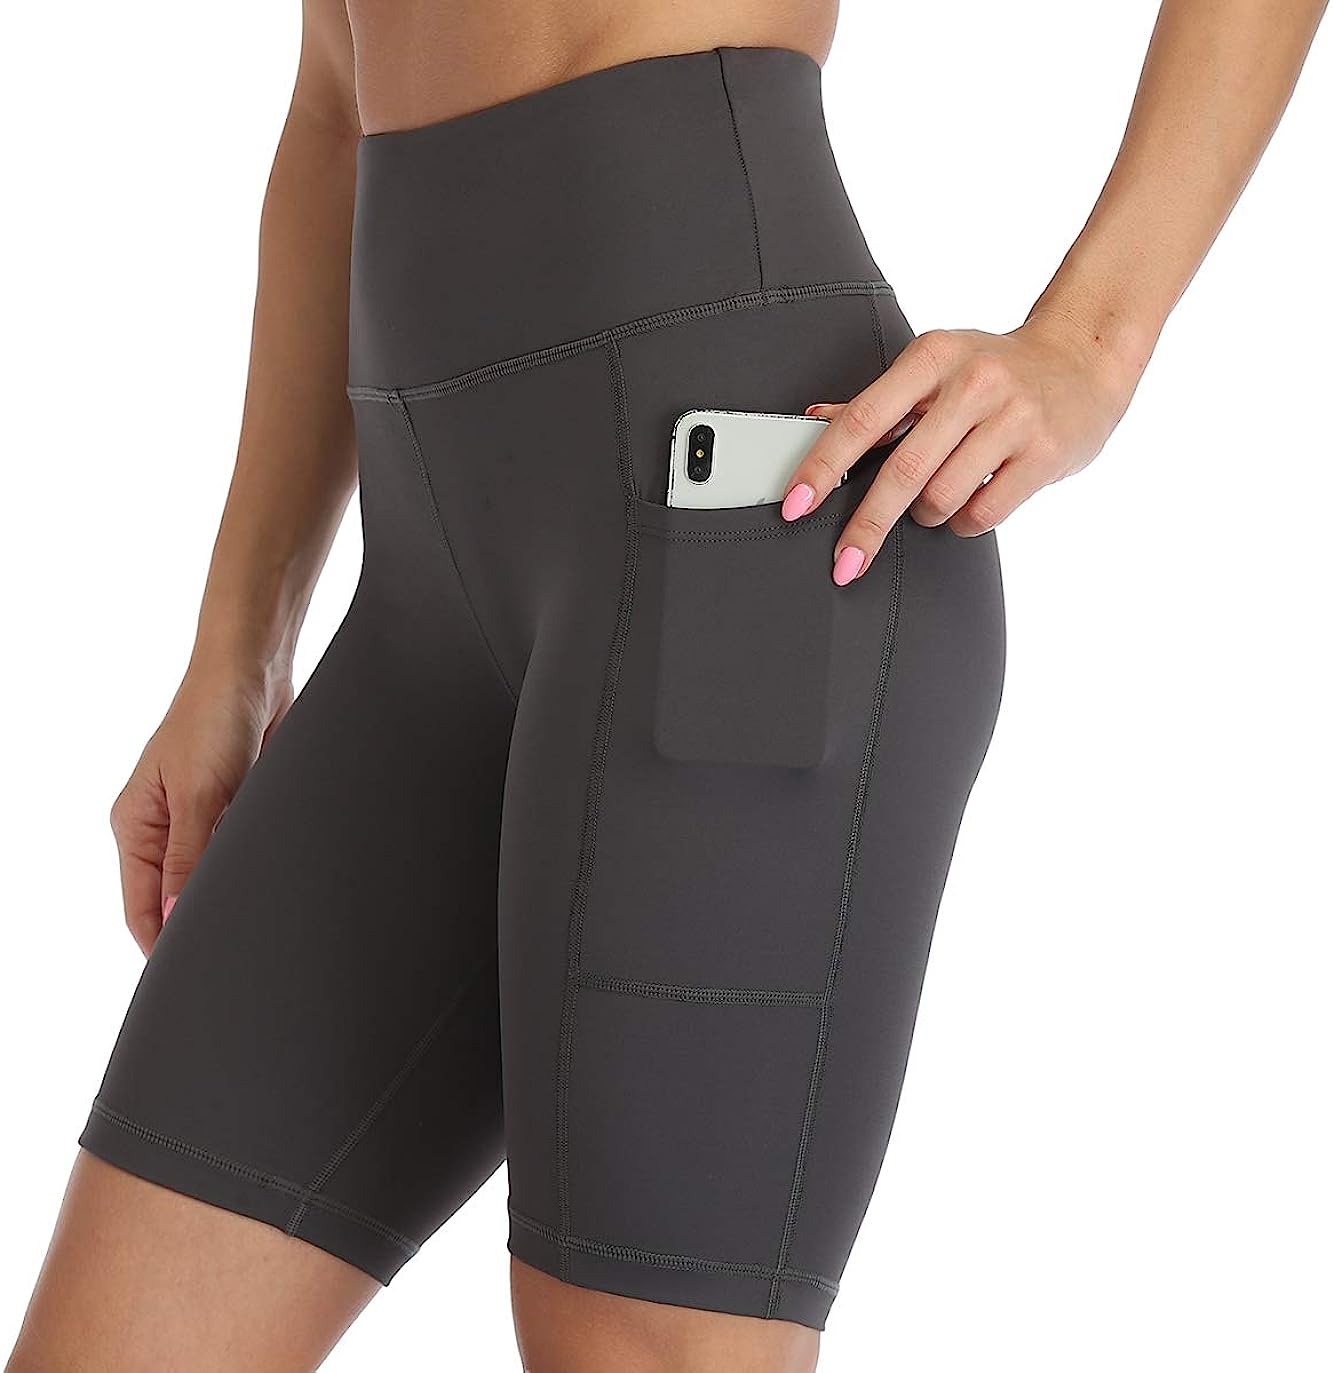 Amazon Essentials Women's Shorts